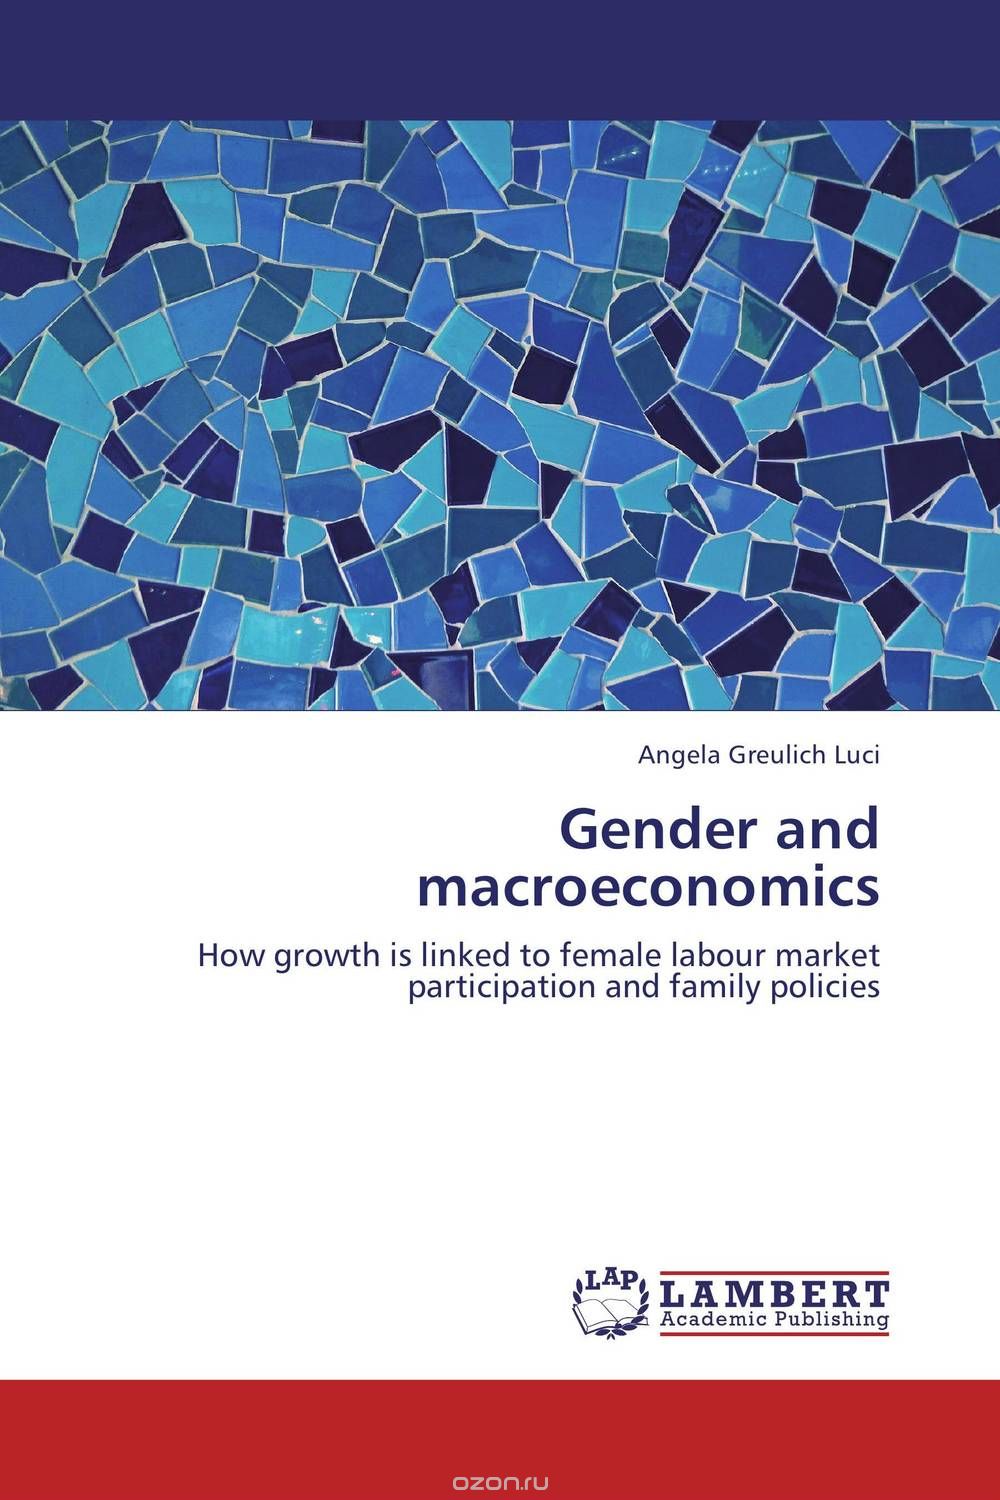 Скачать книгу "Gender and macroeconomics"